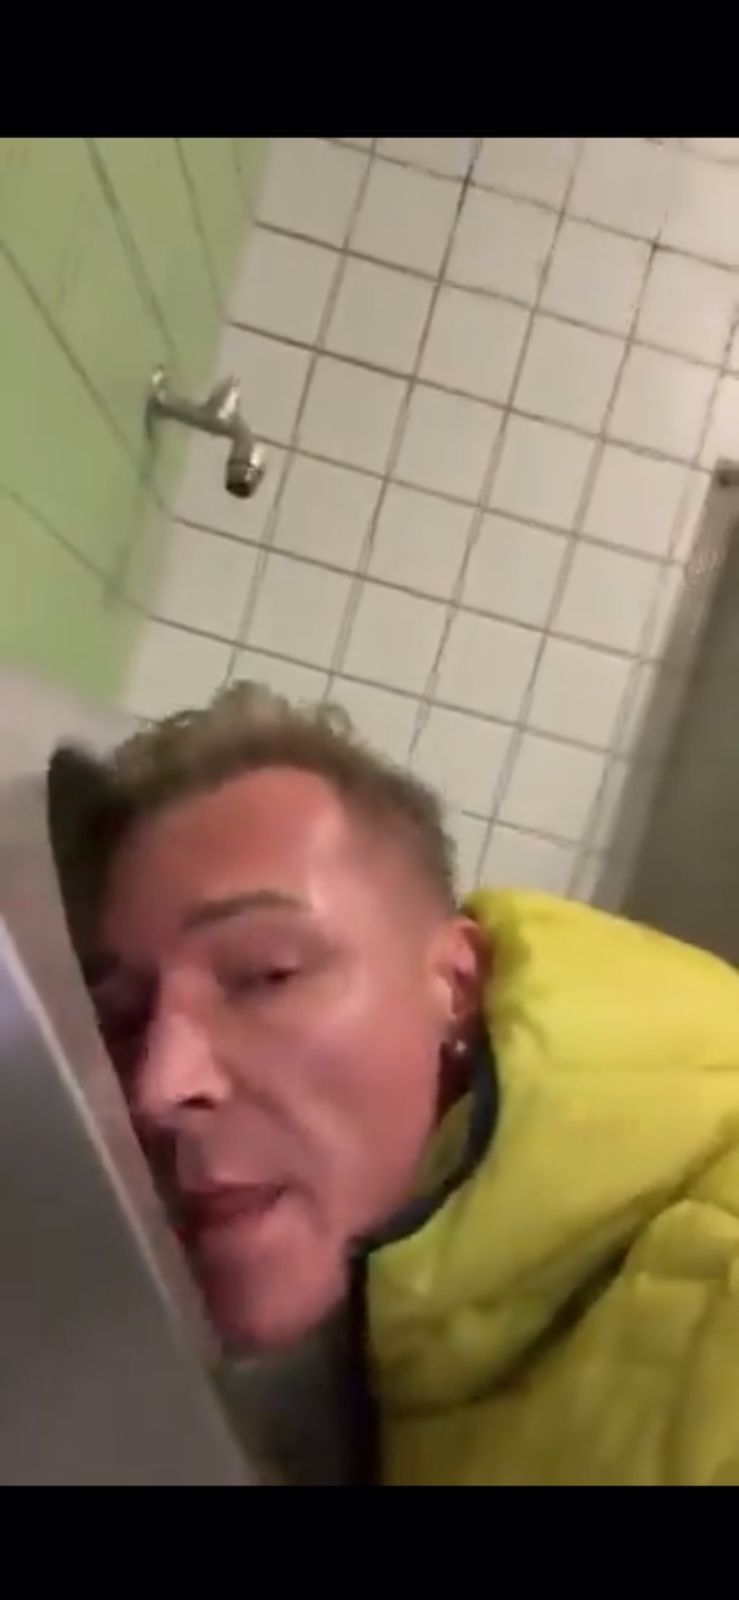 Ein deutscher Politiker ging viral, weil er Toiletten und Urinale in öffentlichen Toiletten leckte